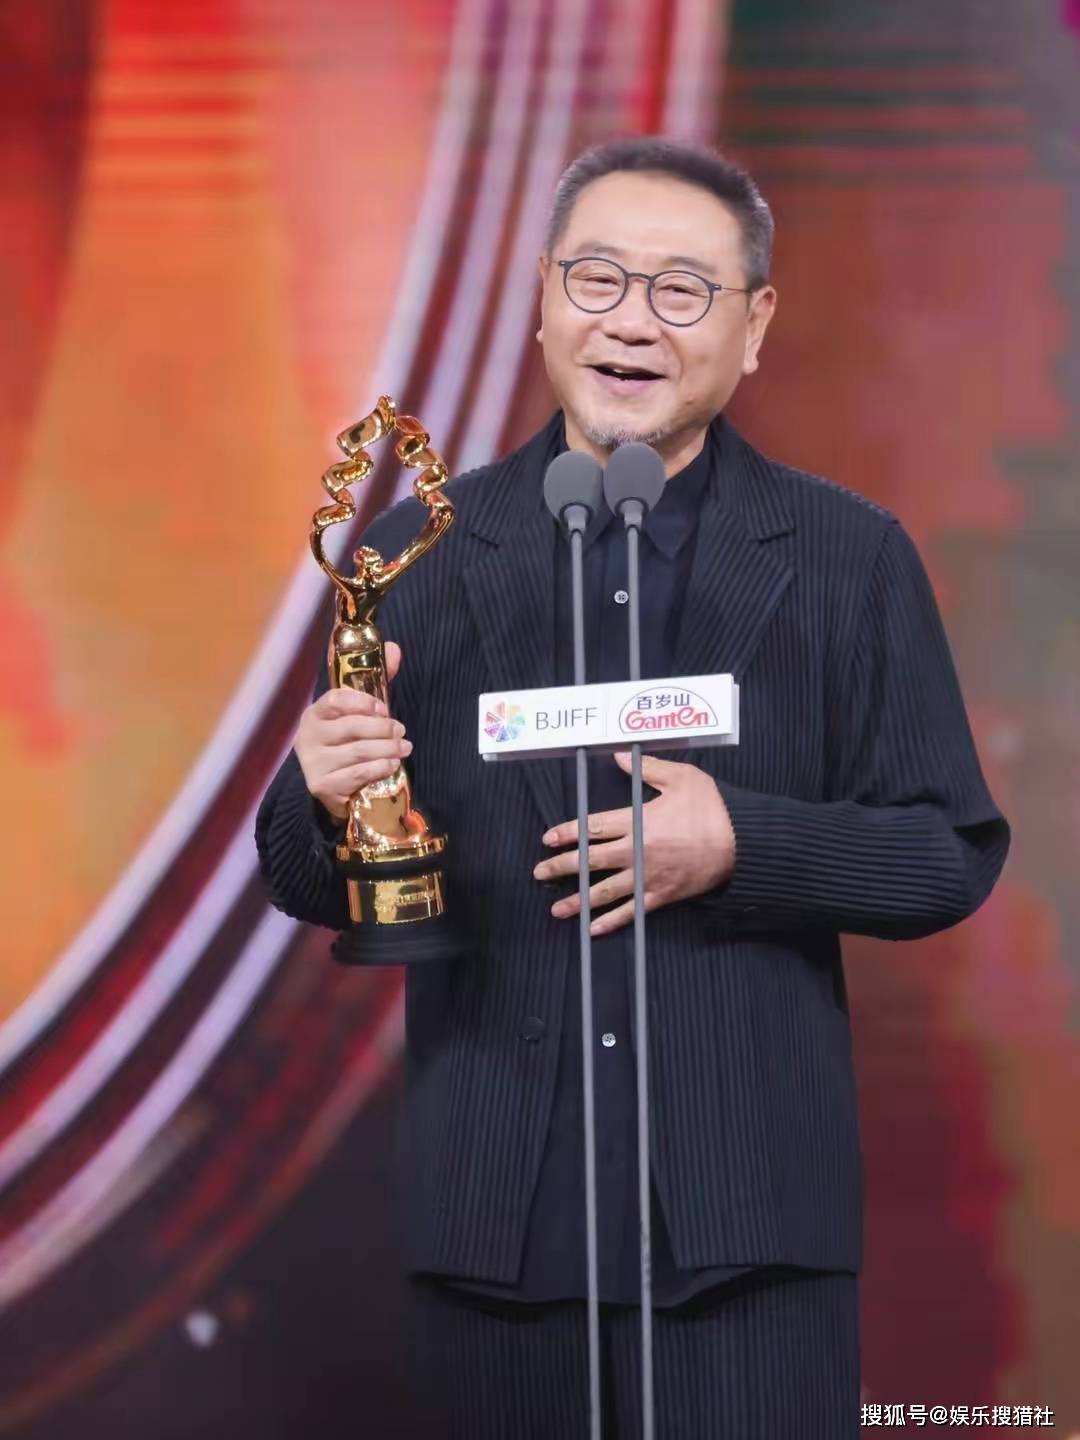 范伟获得天坛奖最佳男主角奖，62岁年龄再夺影帝称号